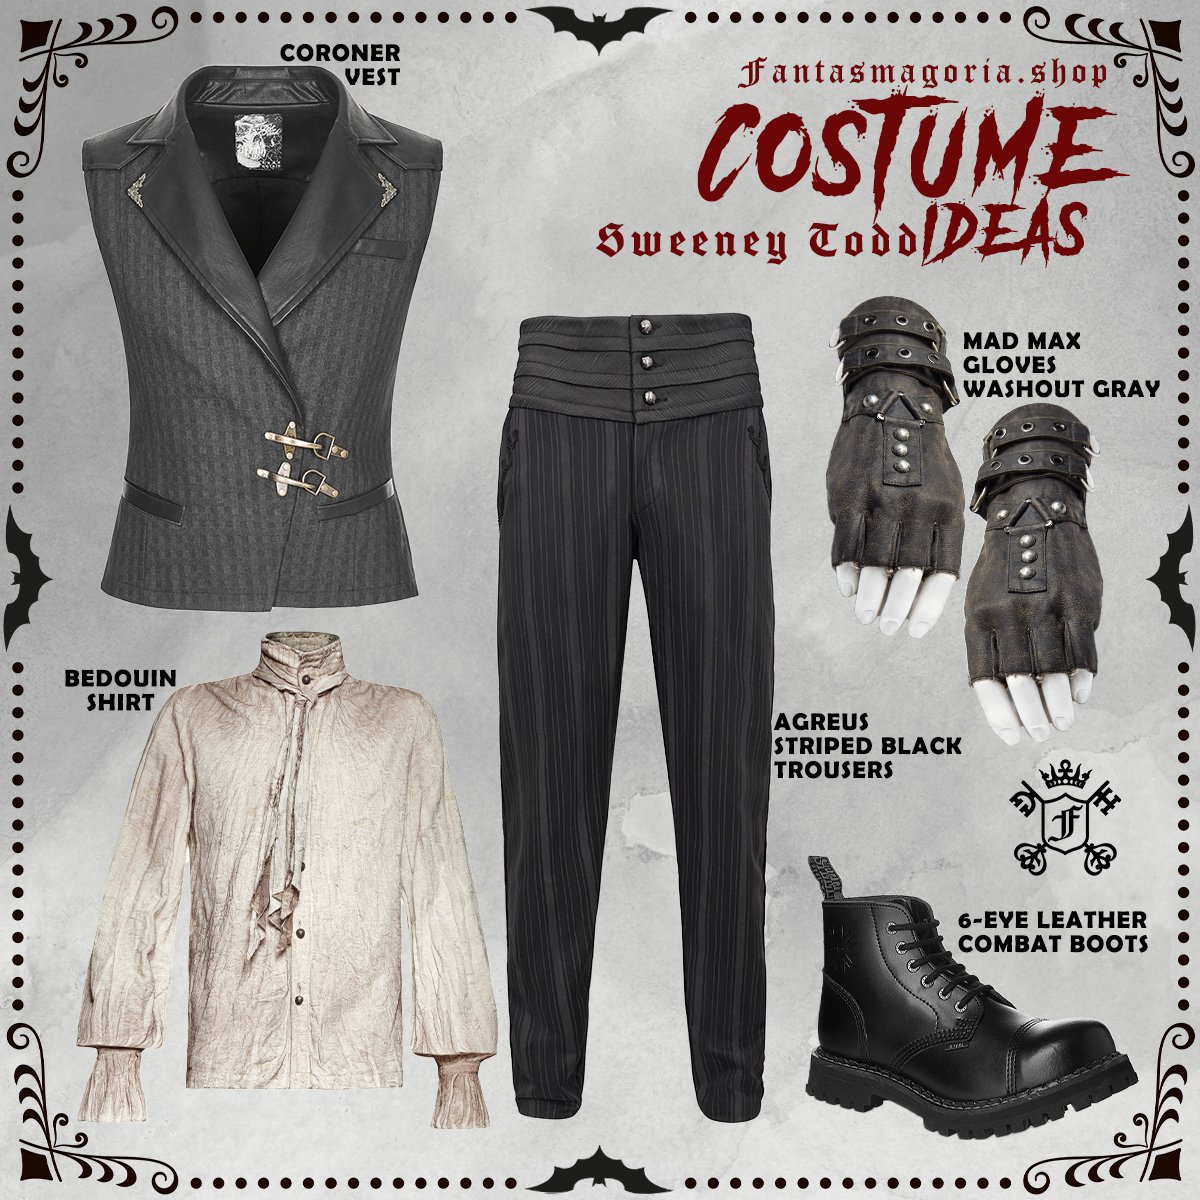 Sweeney Todd Halloween costume